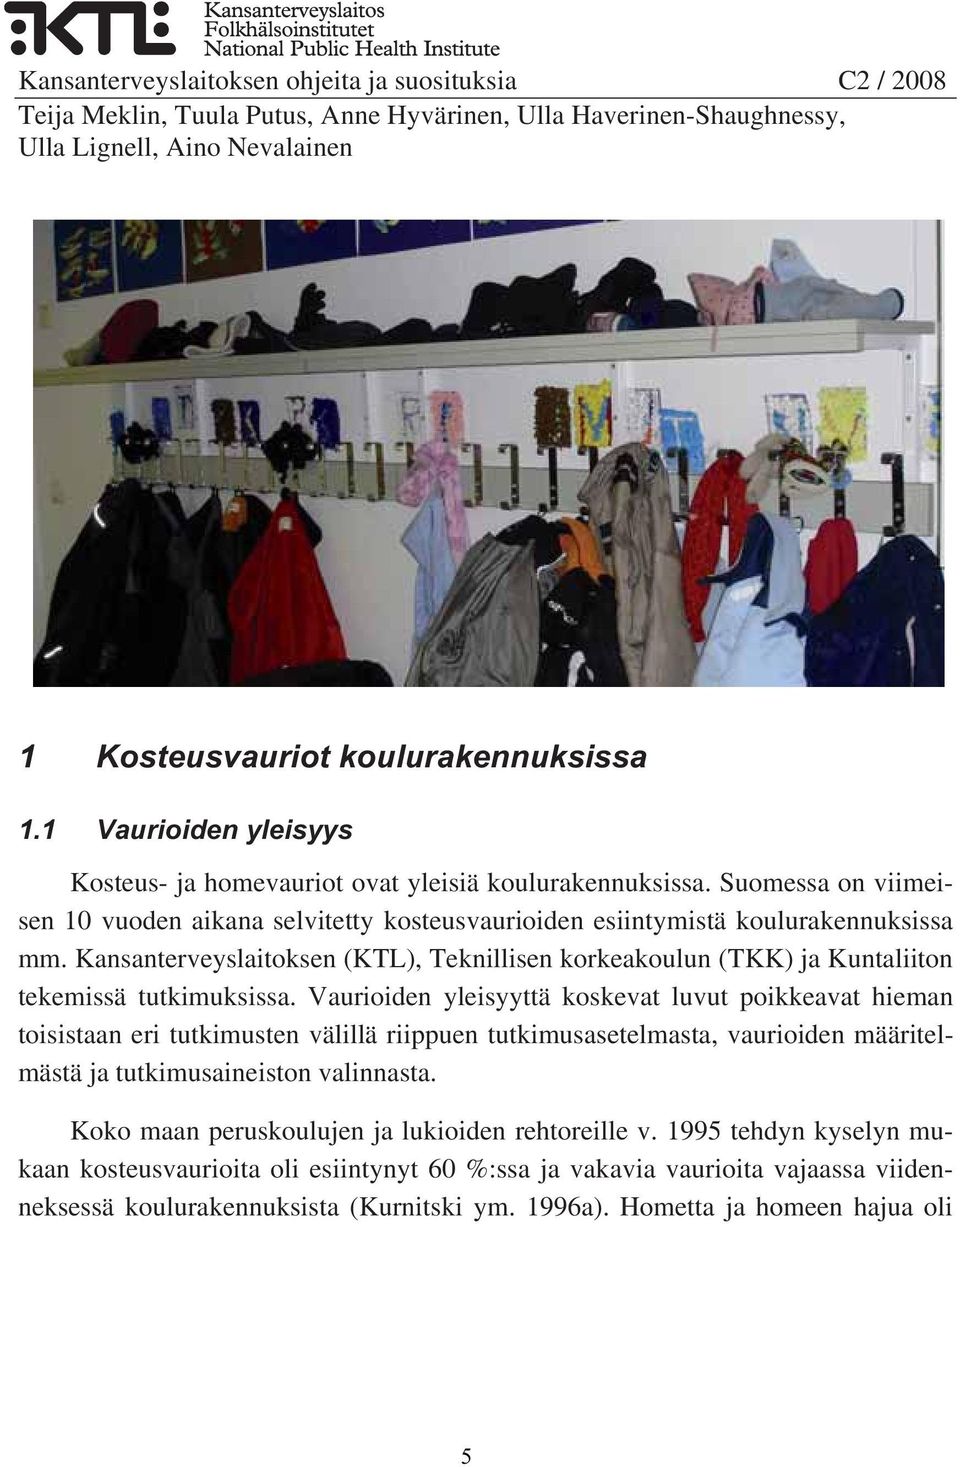 Kansanterveyslaitoksen (KTL), Teknillisen korkeakoulun (TKK) ja Kuntaliiton tekemissä tutkimuksissa.